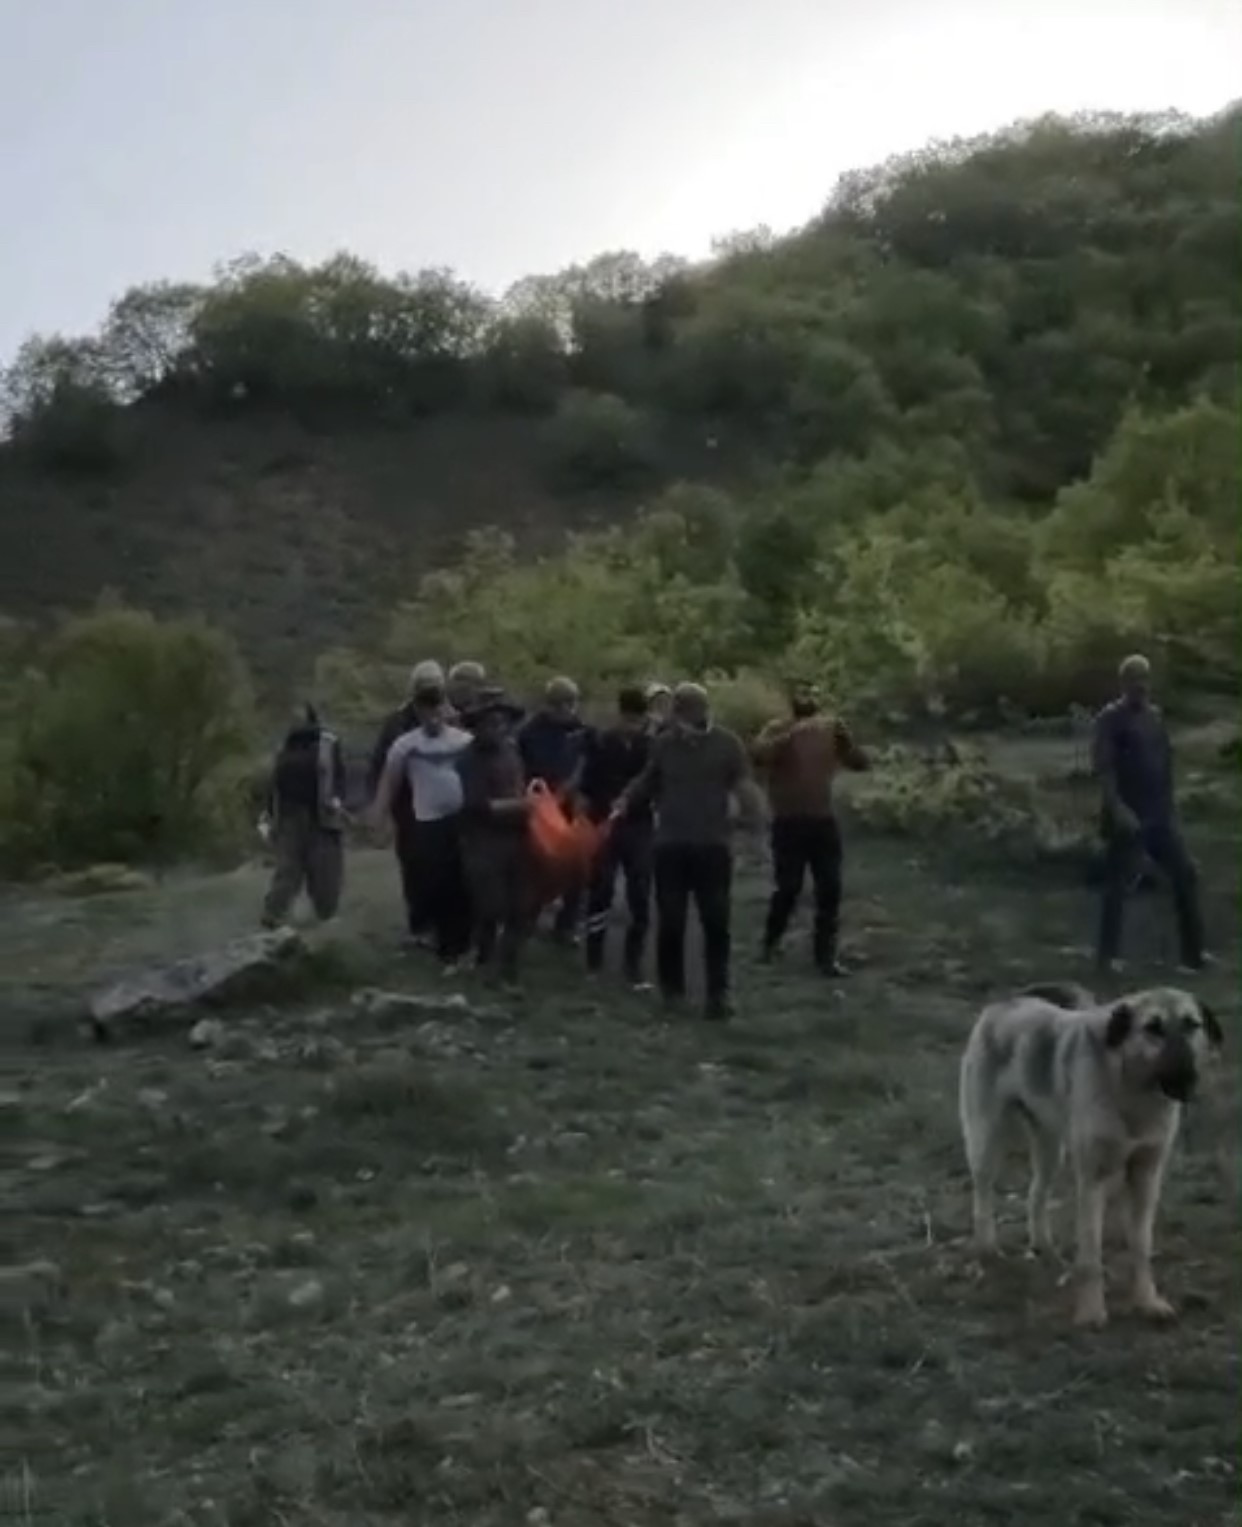 Tunceli’de ayının saldırısına uğrayan adam yaralandı
